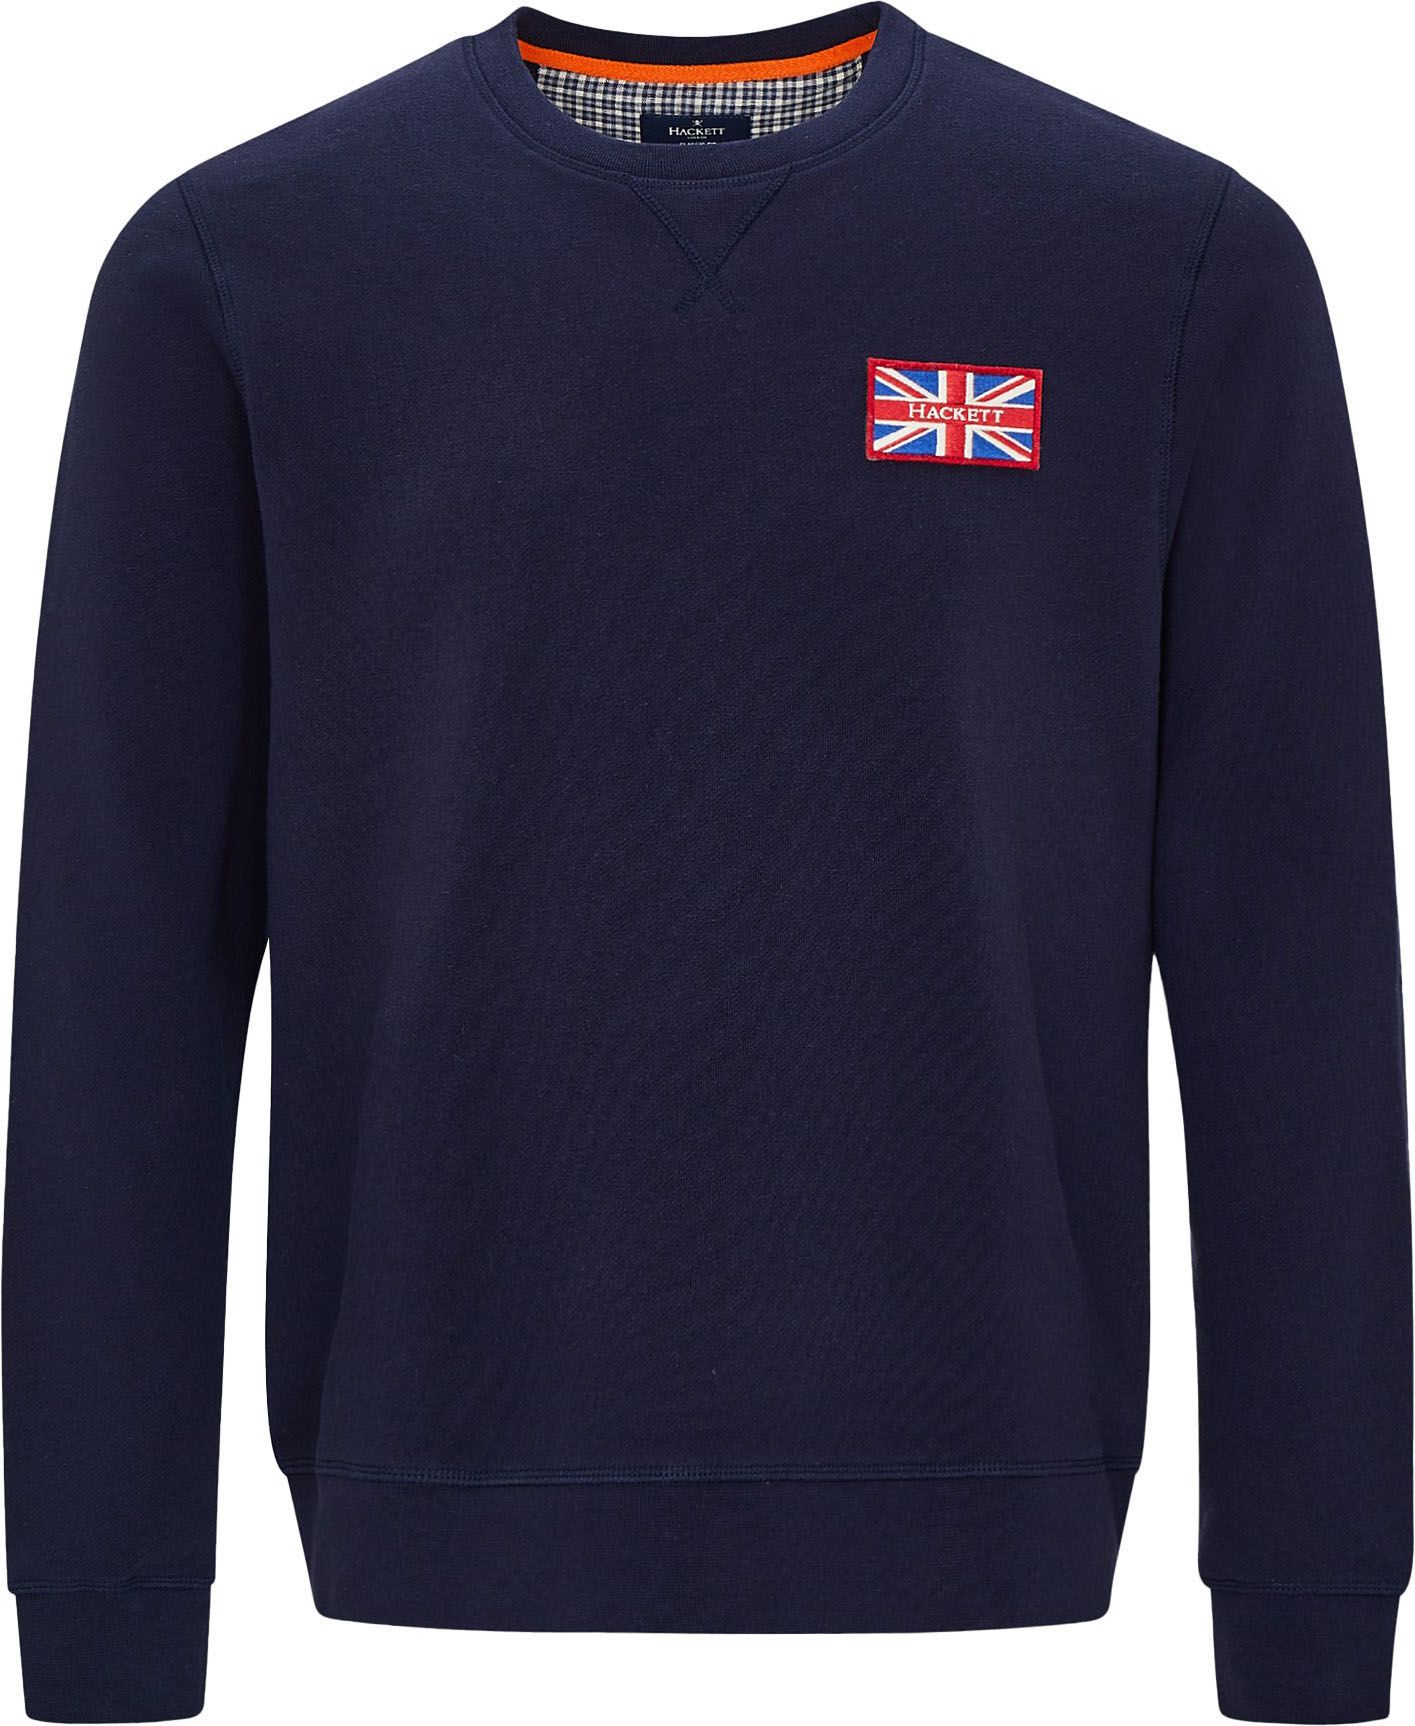 Hackett Sweater Great Brittain Navy Blue Dark Blue size M